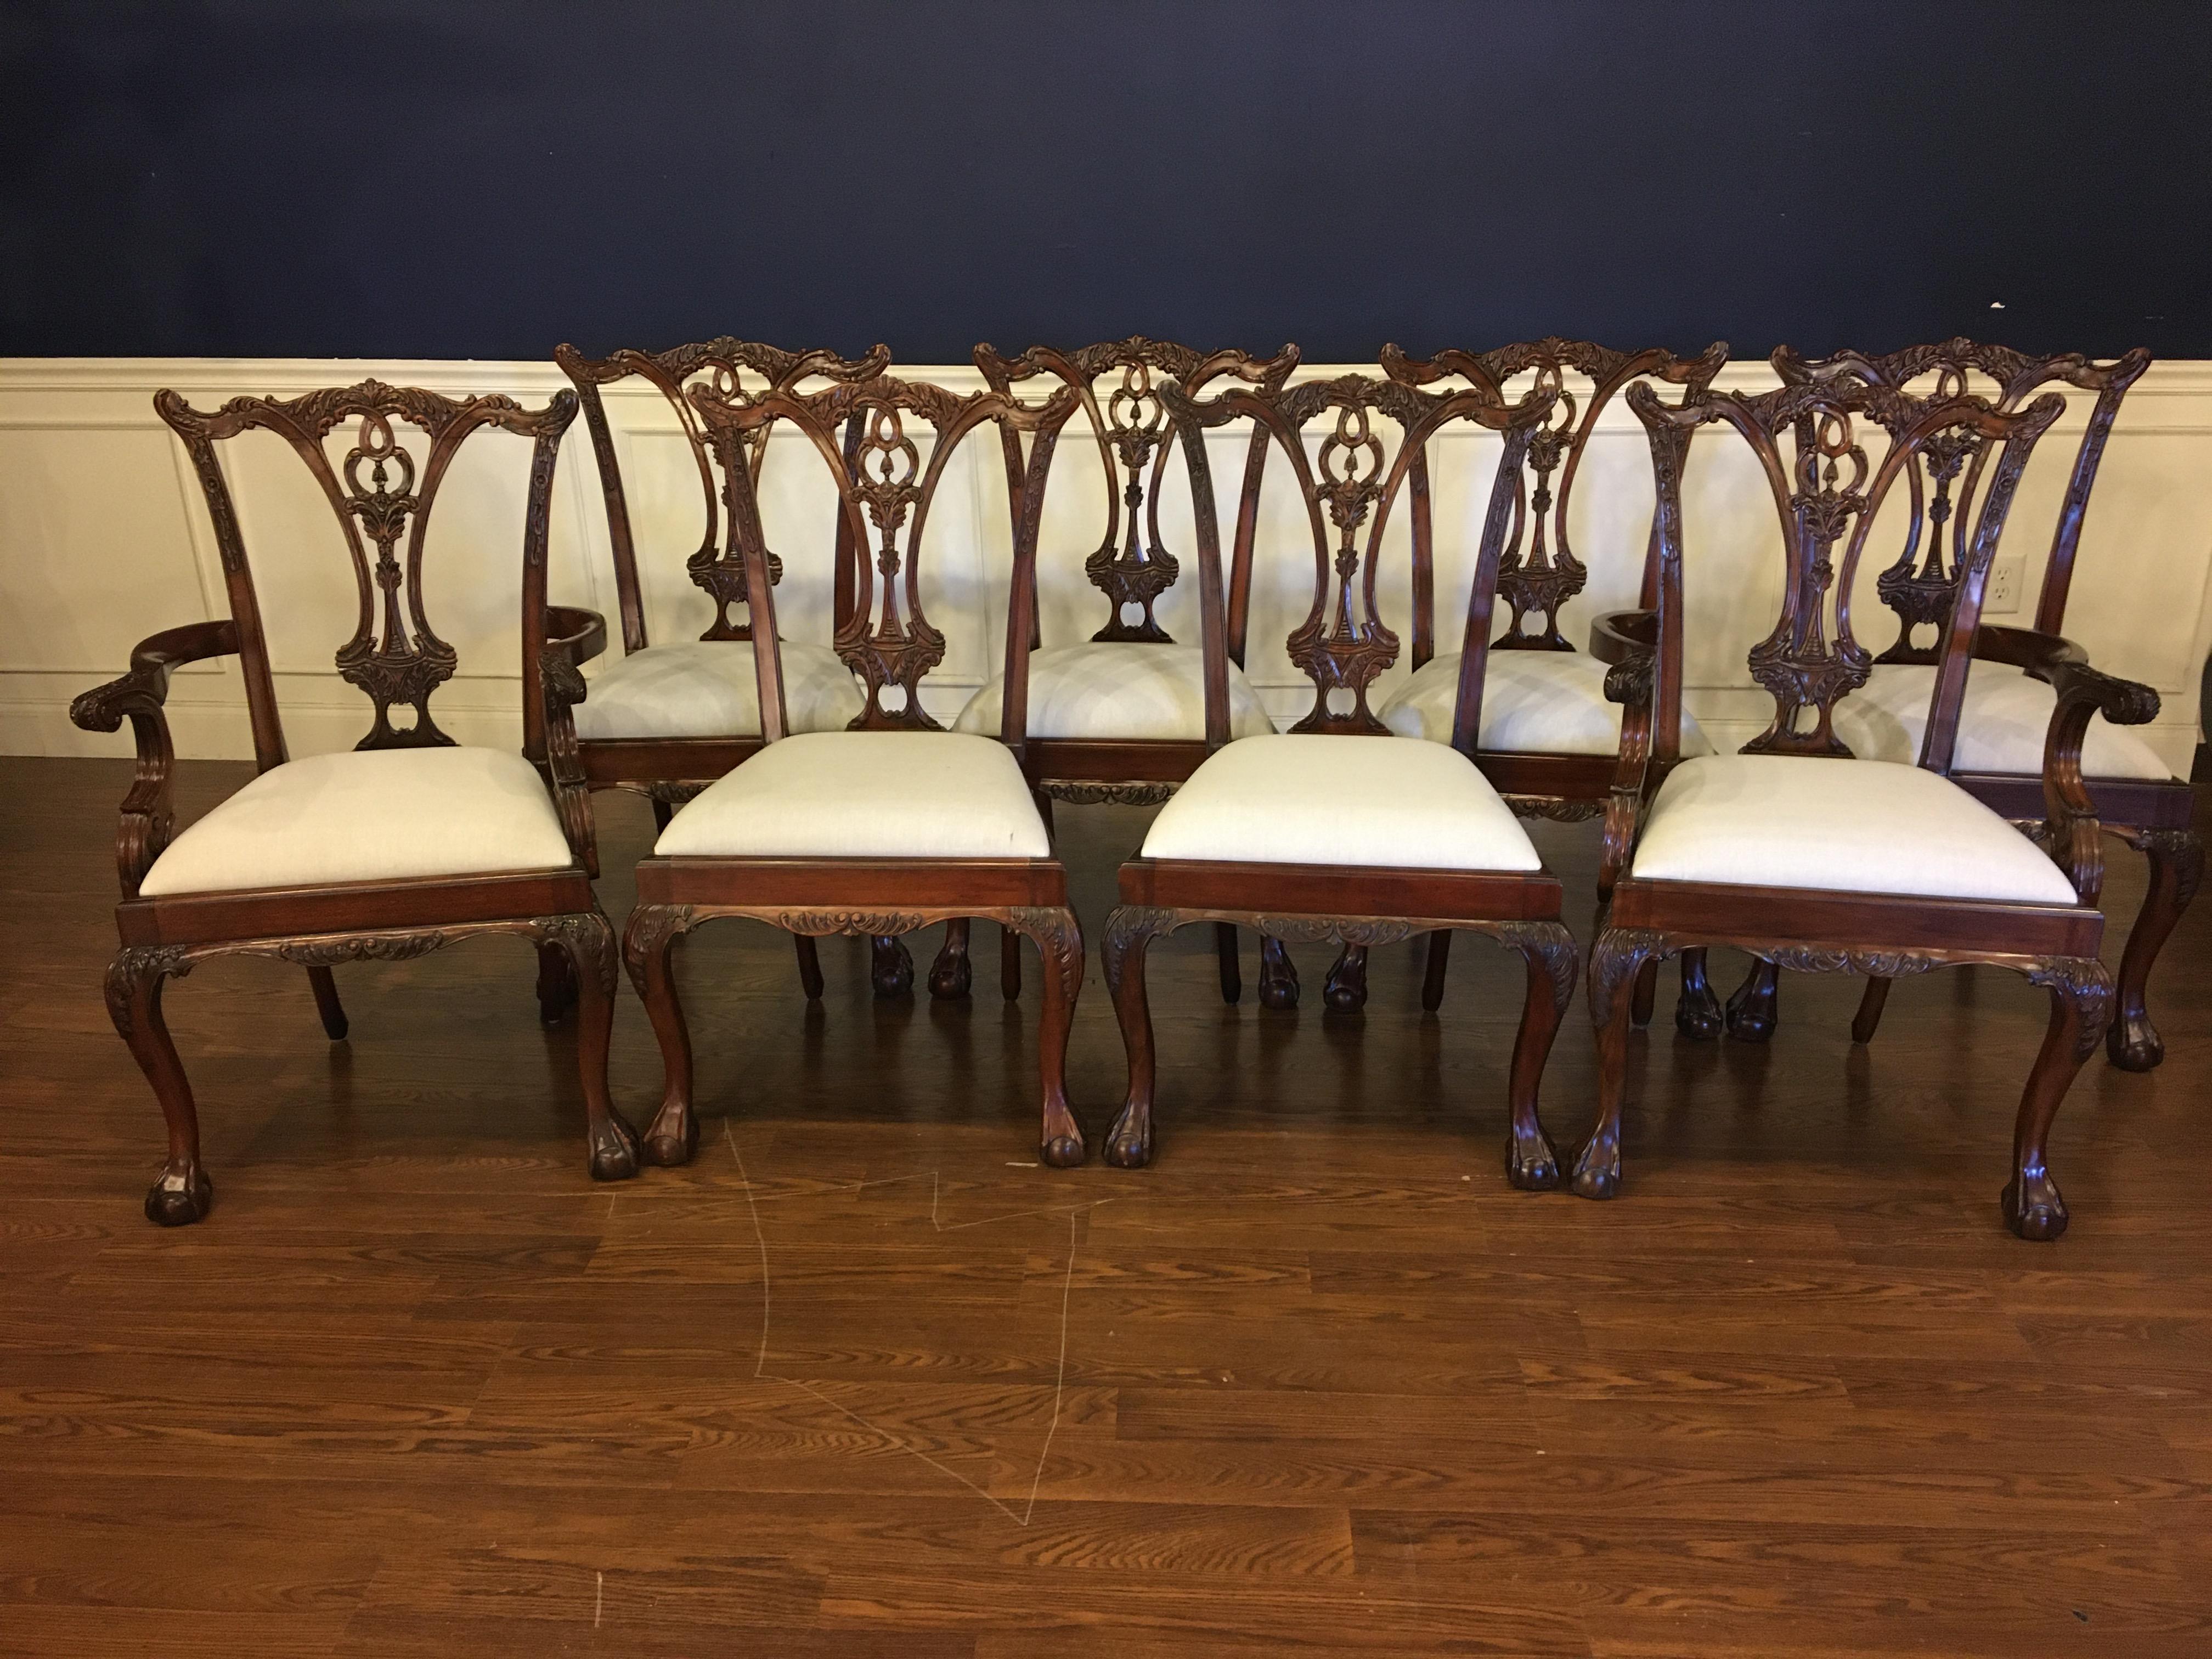 Es handelt sich um neue traditionelle Chippendale-Stühle aus Mahagoni mit Kugel und Kralle. Ihr Design wurde von den englischen Chippendale-Esszimmerstühlen aus der Regency-Zeit inspiriert. Sie sind im klassischen Chippendale-Stil gehalten. Mit